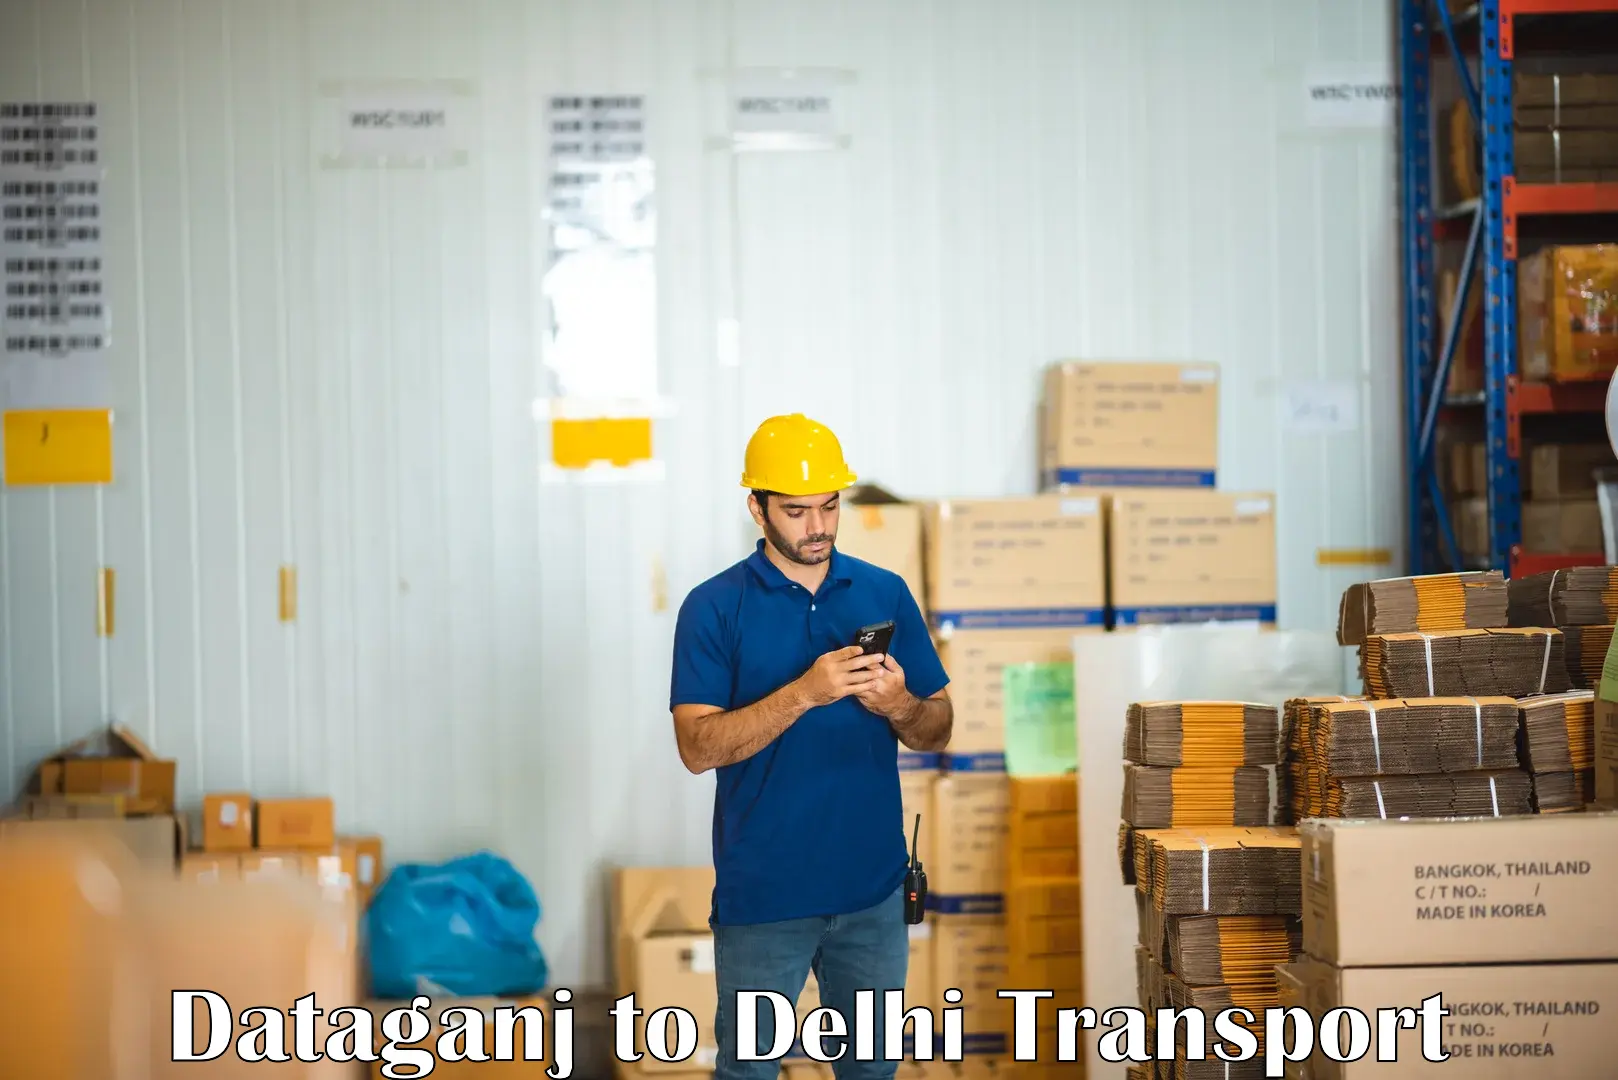 Road transport services Dataganj to Delhi Technological University DTU